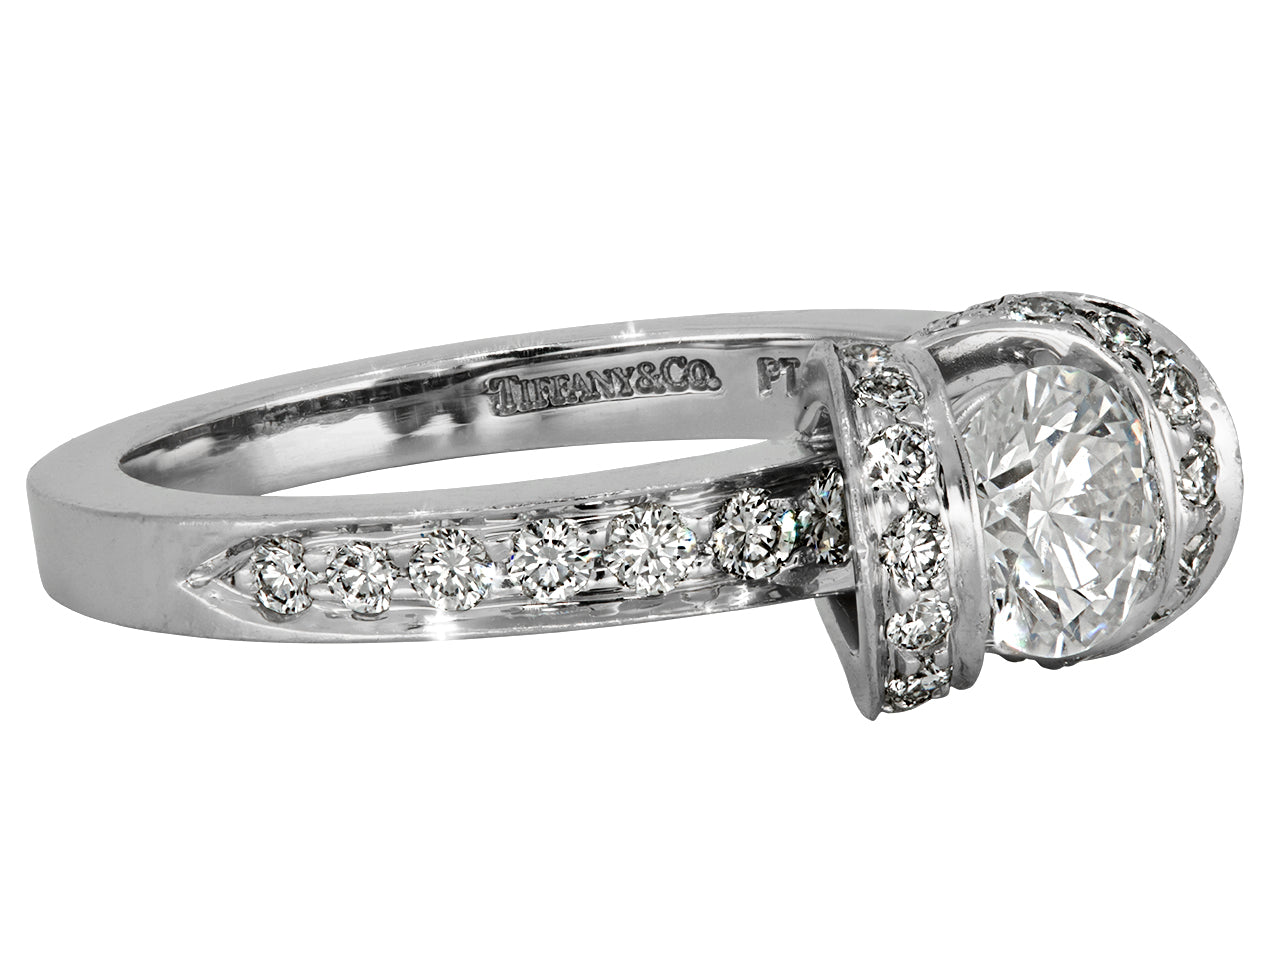 Tiffany & Co. Diamond 'Ribbon' Ring in Platinum